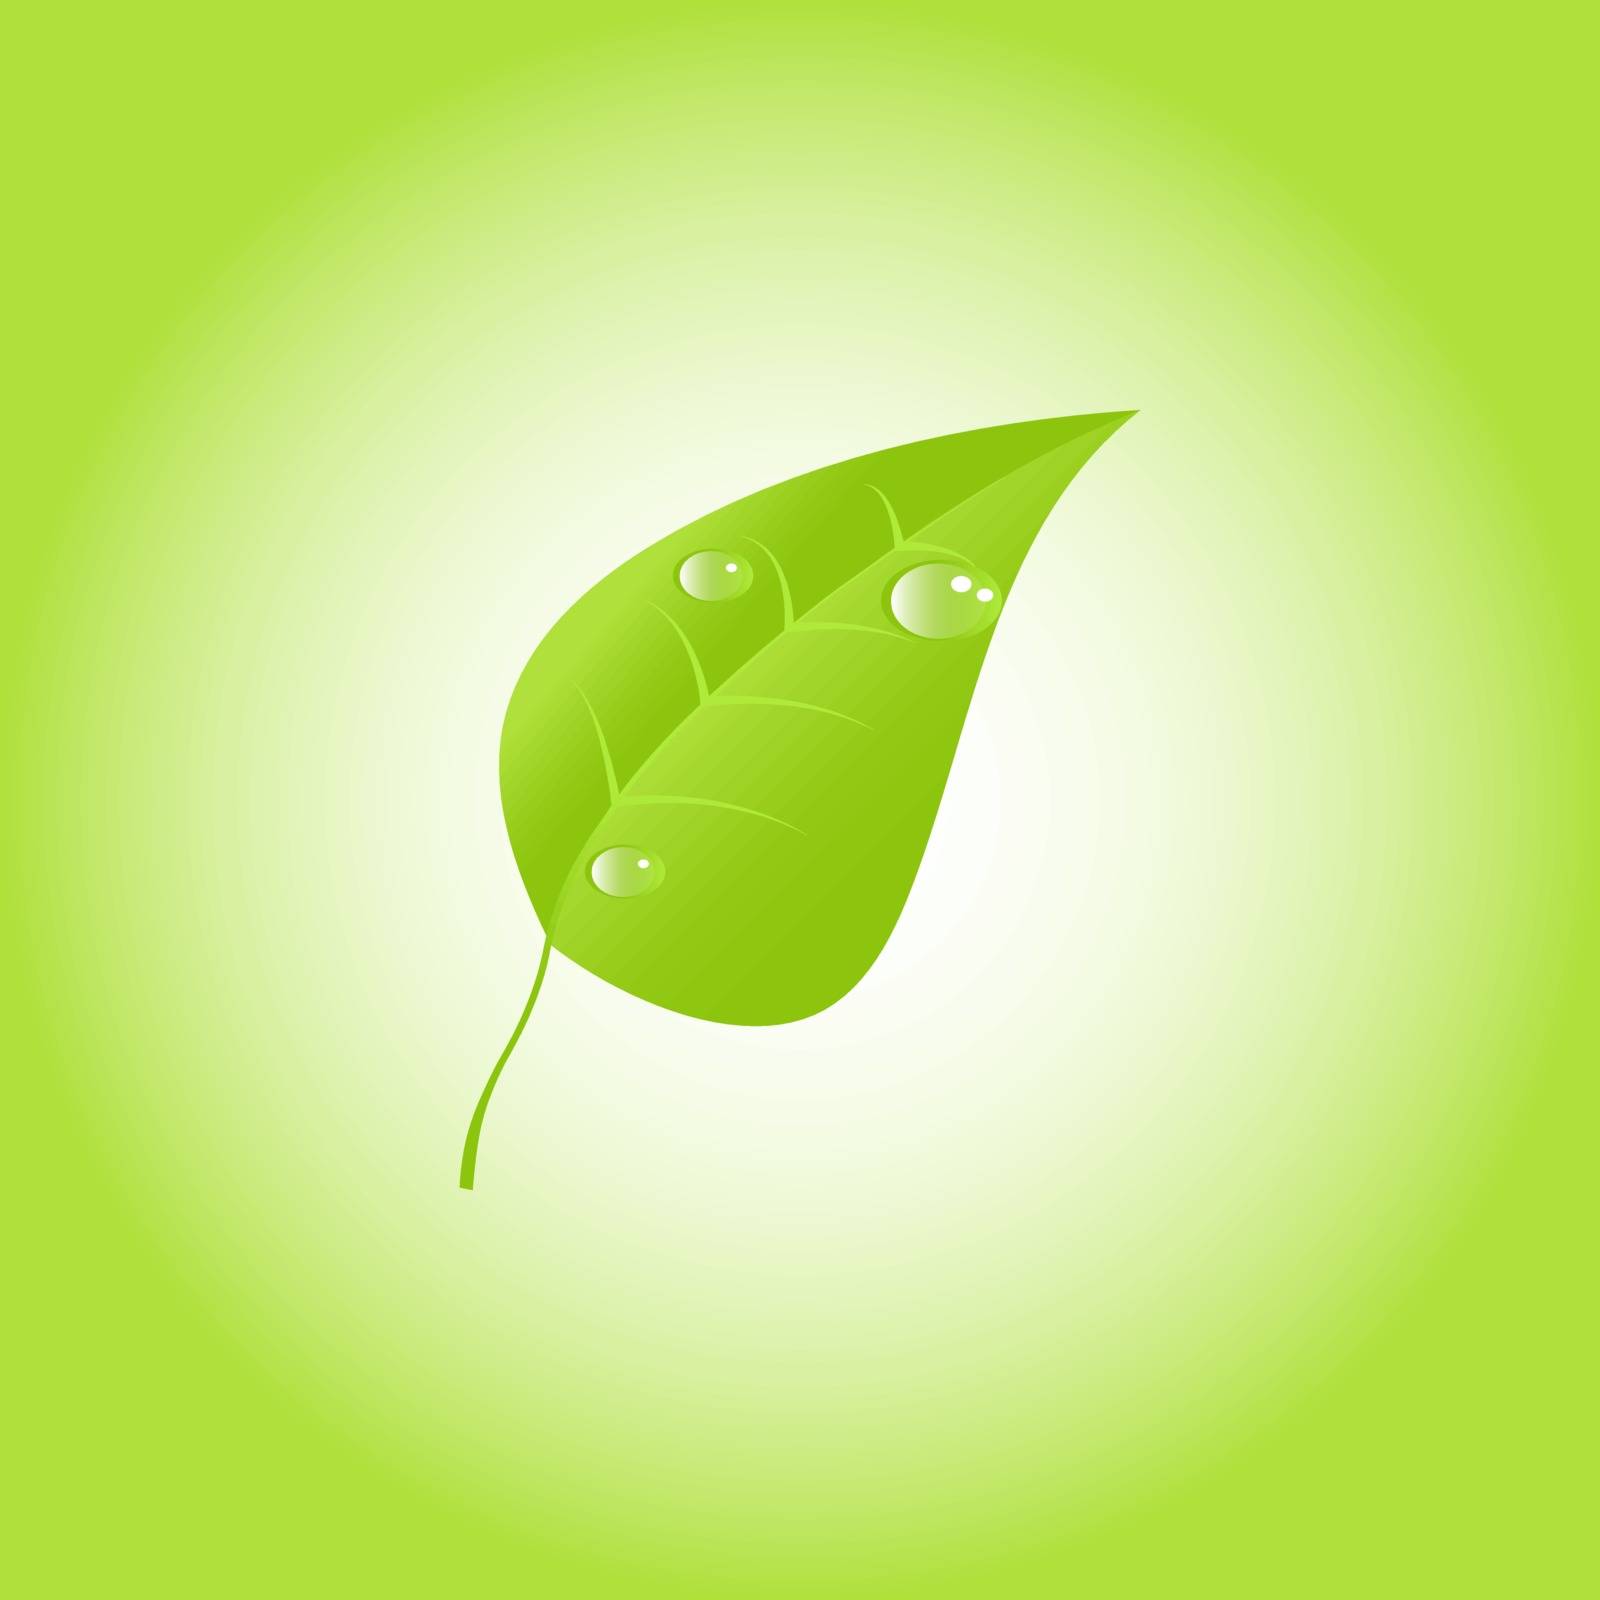 Green leaf wGreen leaf with drops of dew. Vectorith drops of dew. Vector. EPS 10